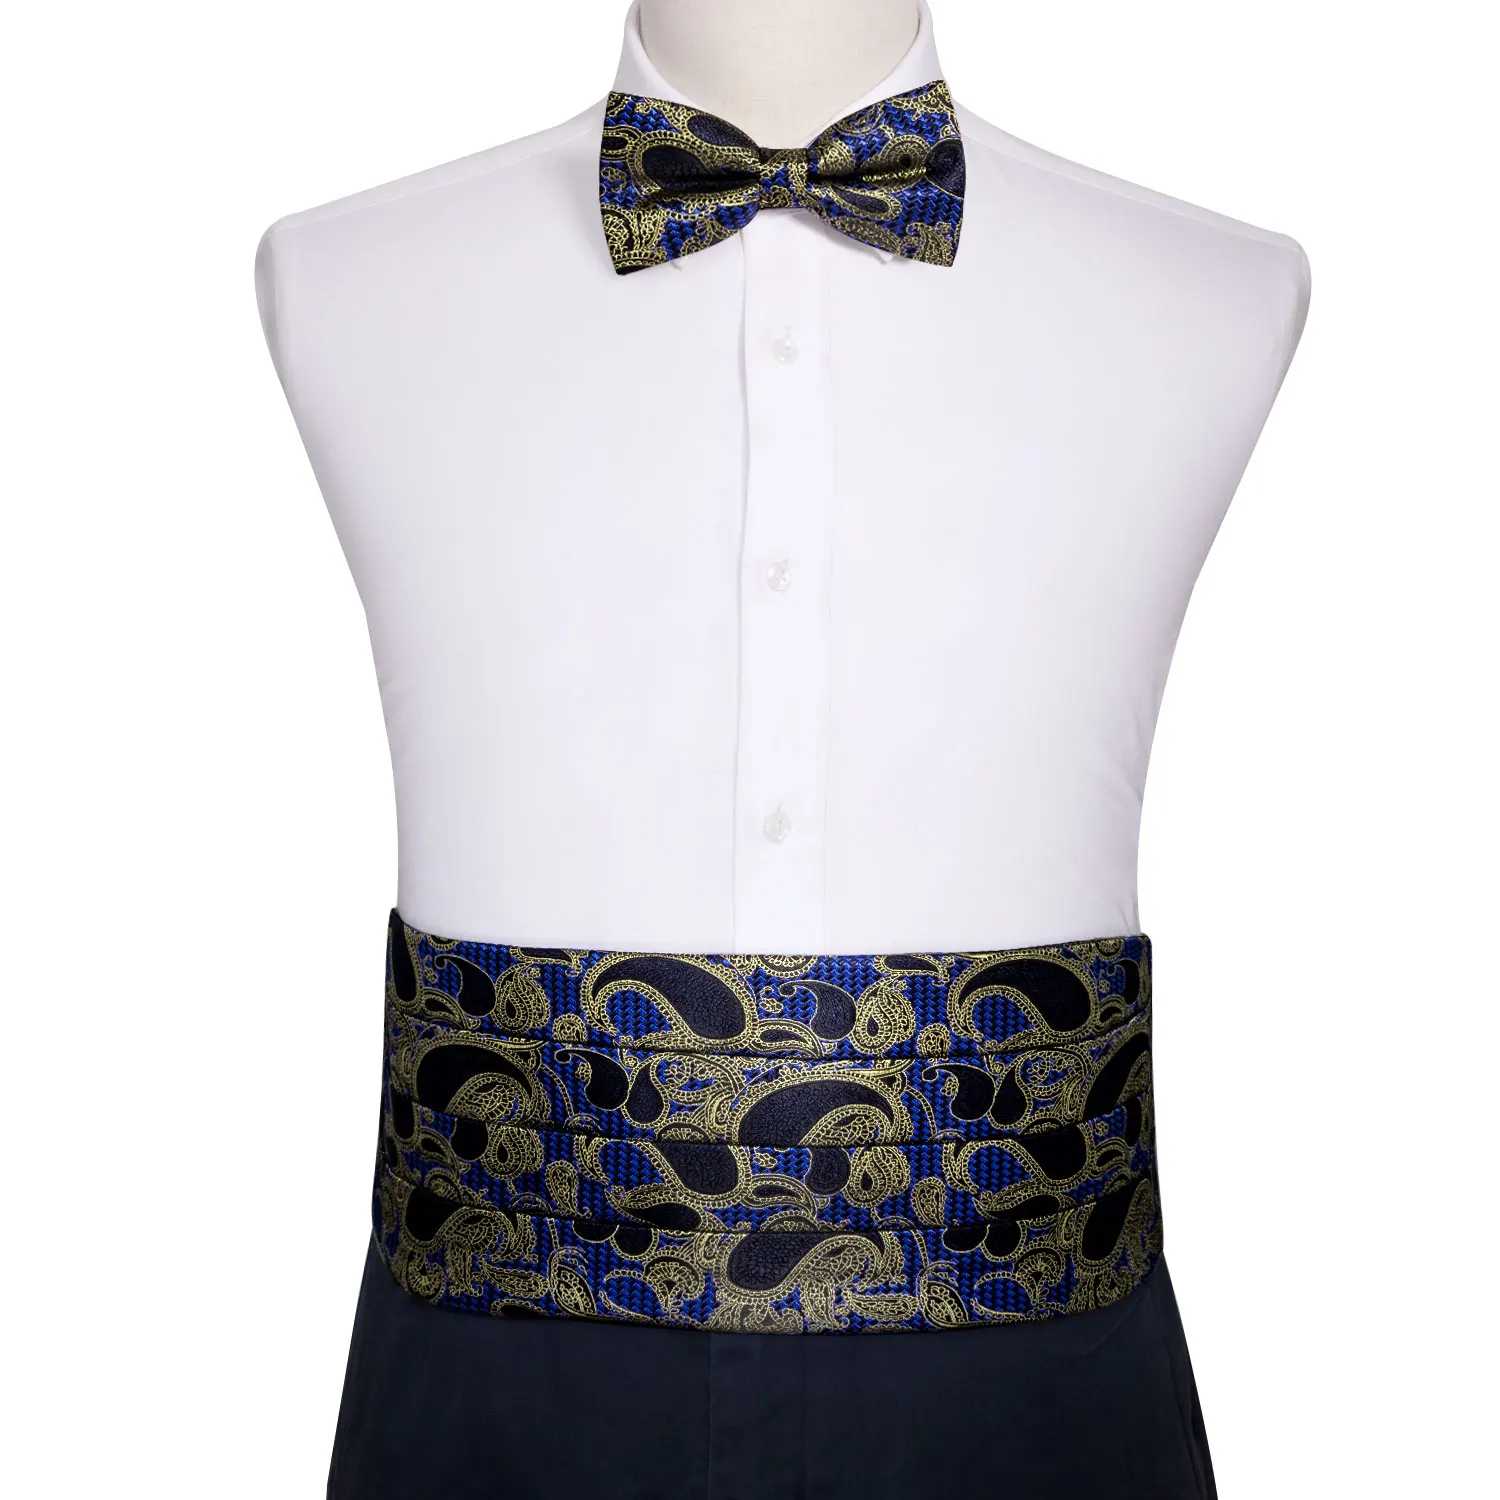 Barry. Wang синий галстук-бабочка для Для мужчин Пейсли поясом с бантом галстук, шейный платок и запонки пояс для свадьбы YF-1025